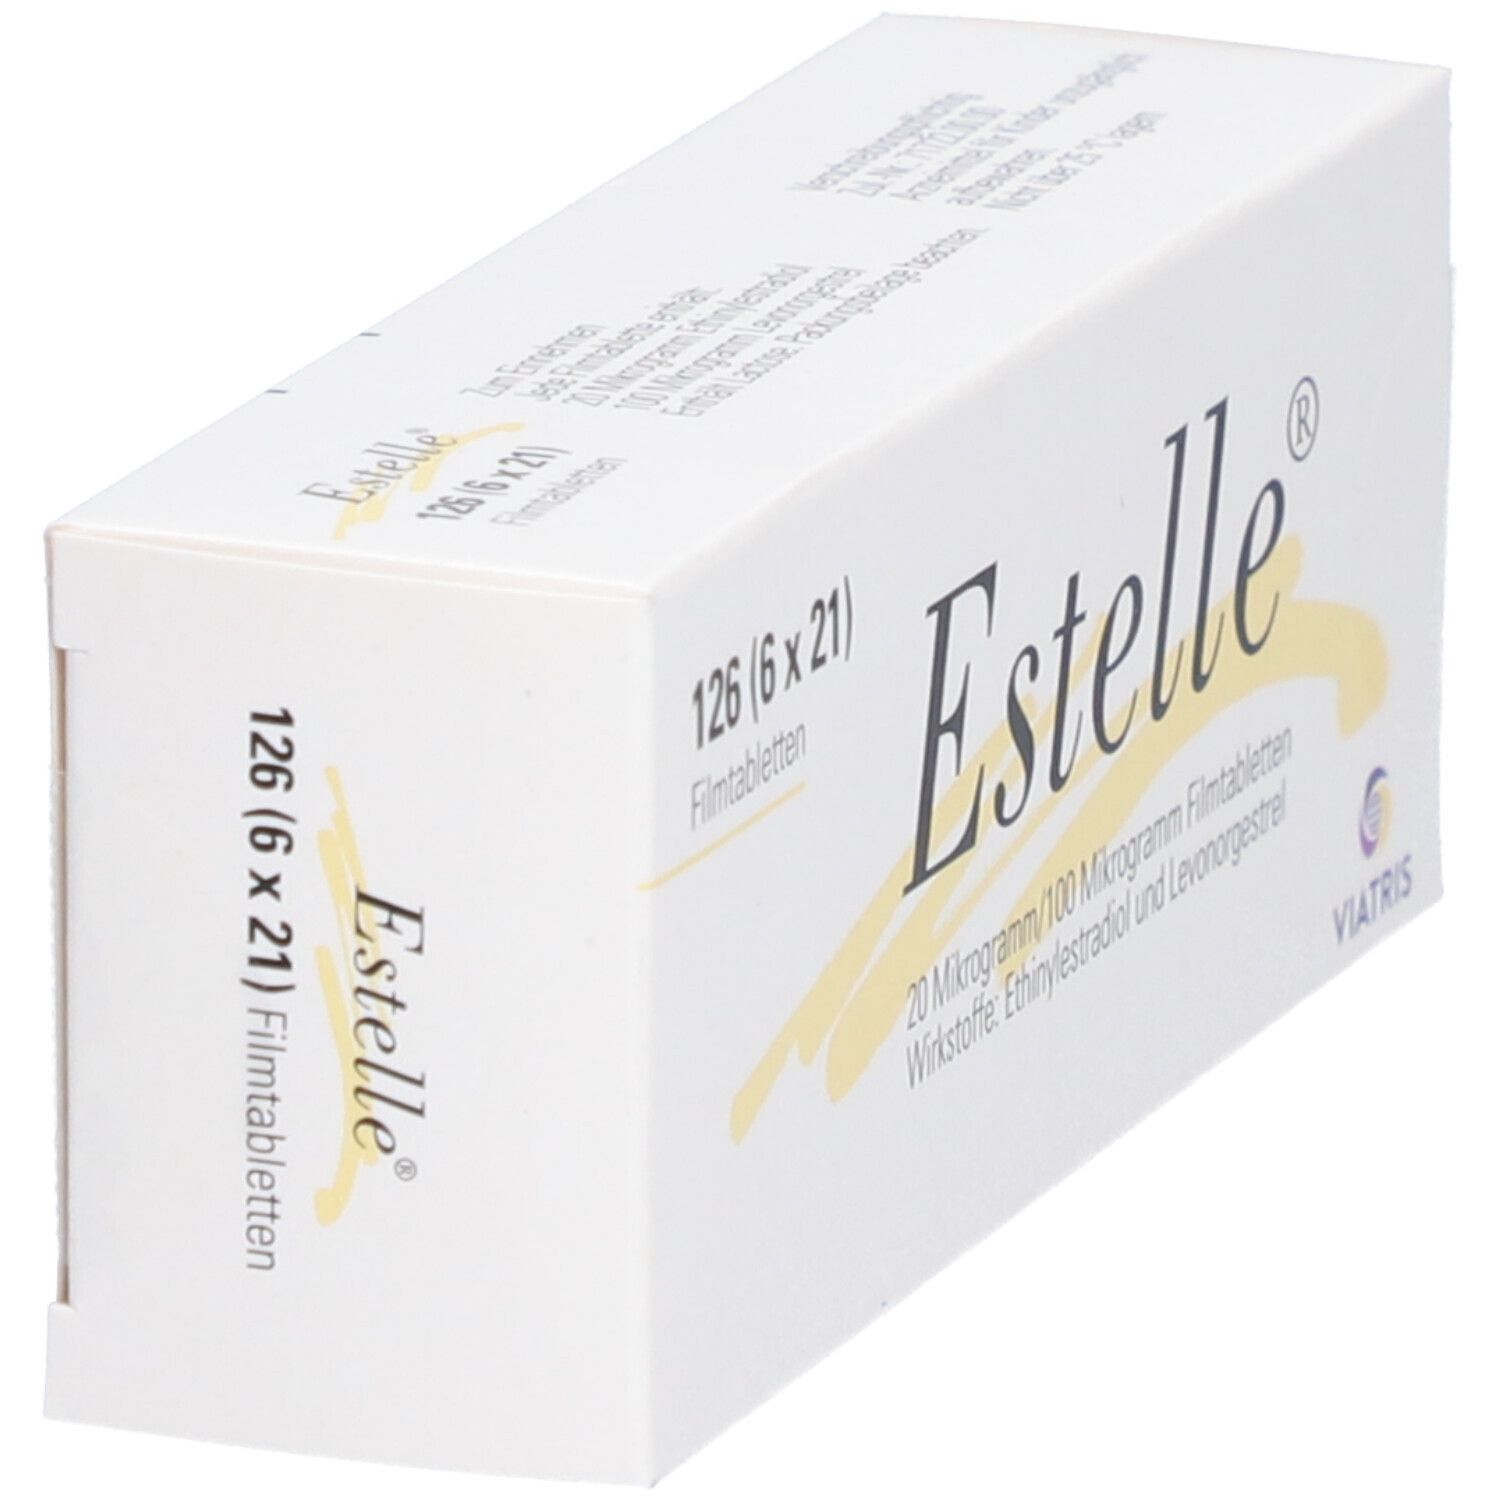 Estelle® 20 µg/100 µg